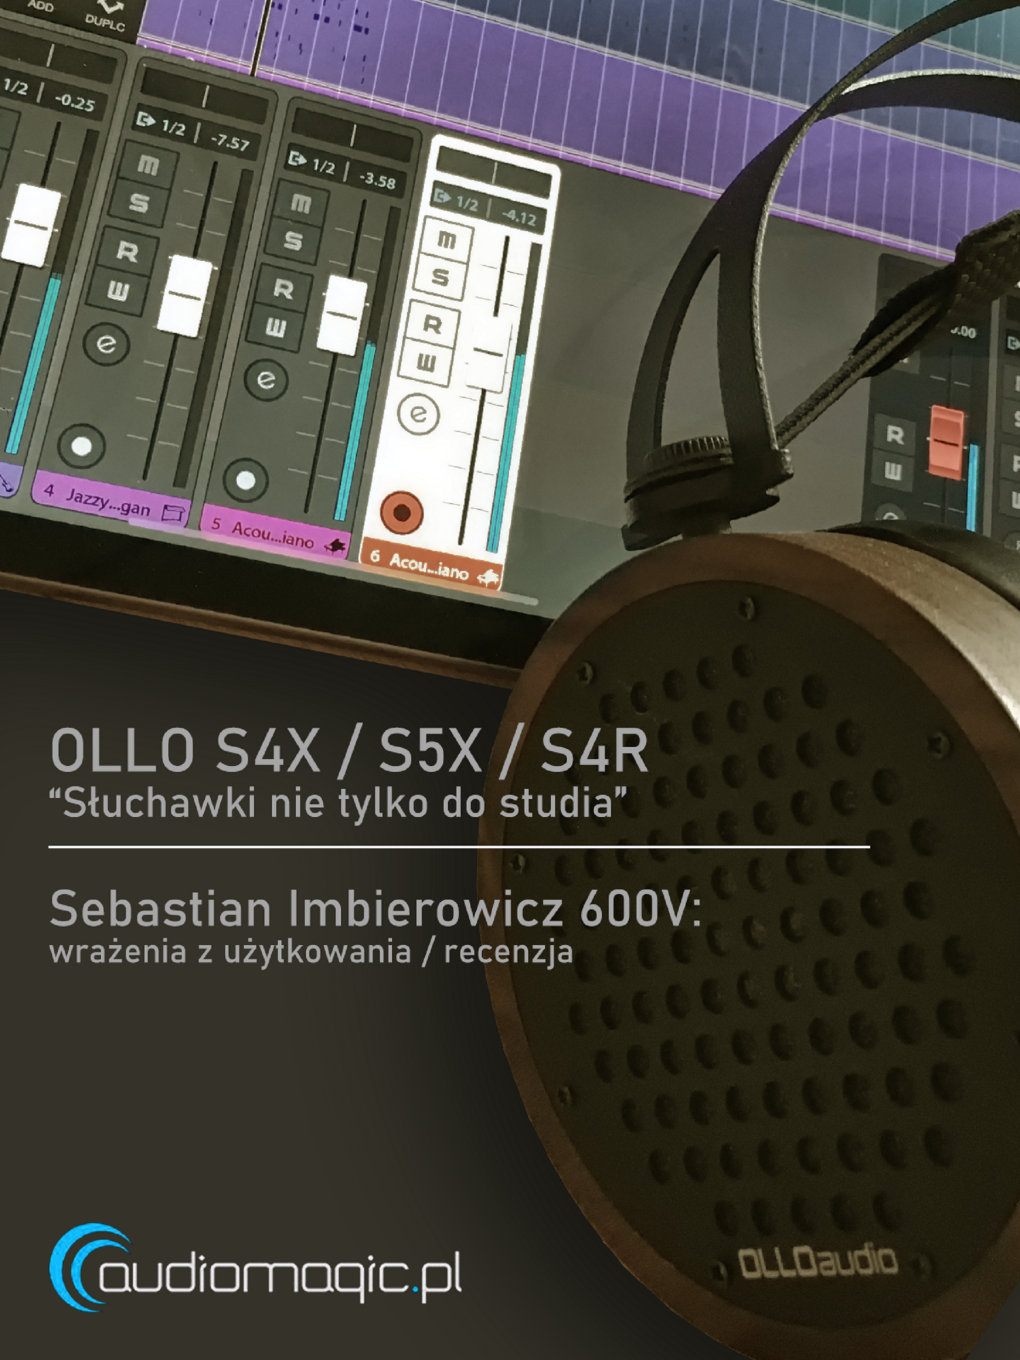 OLLO S4X/S5X/S4R - słuchawki nie tylko do studia